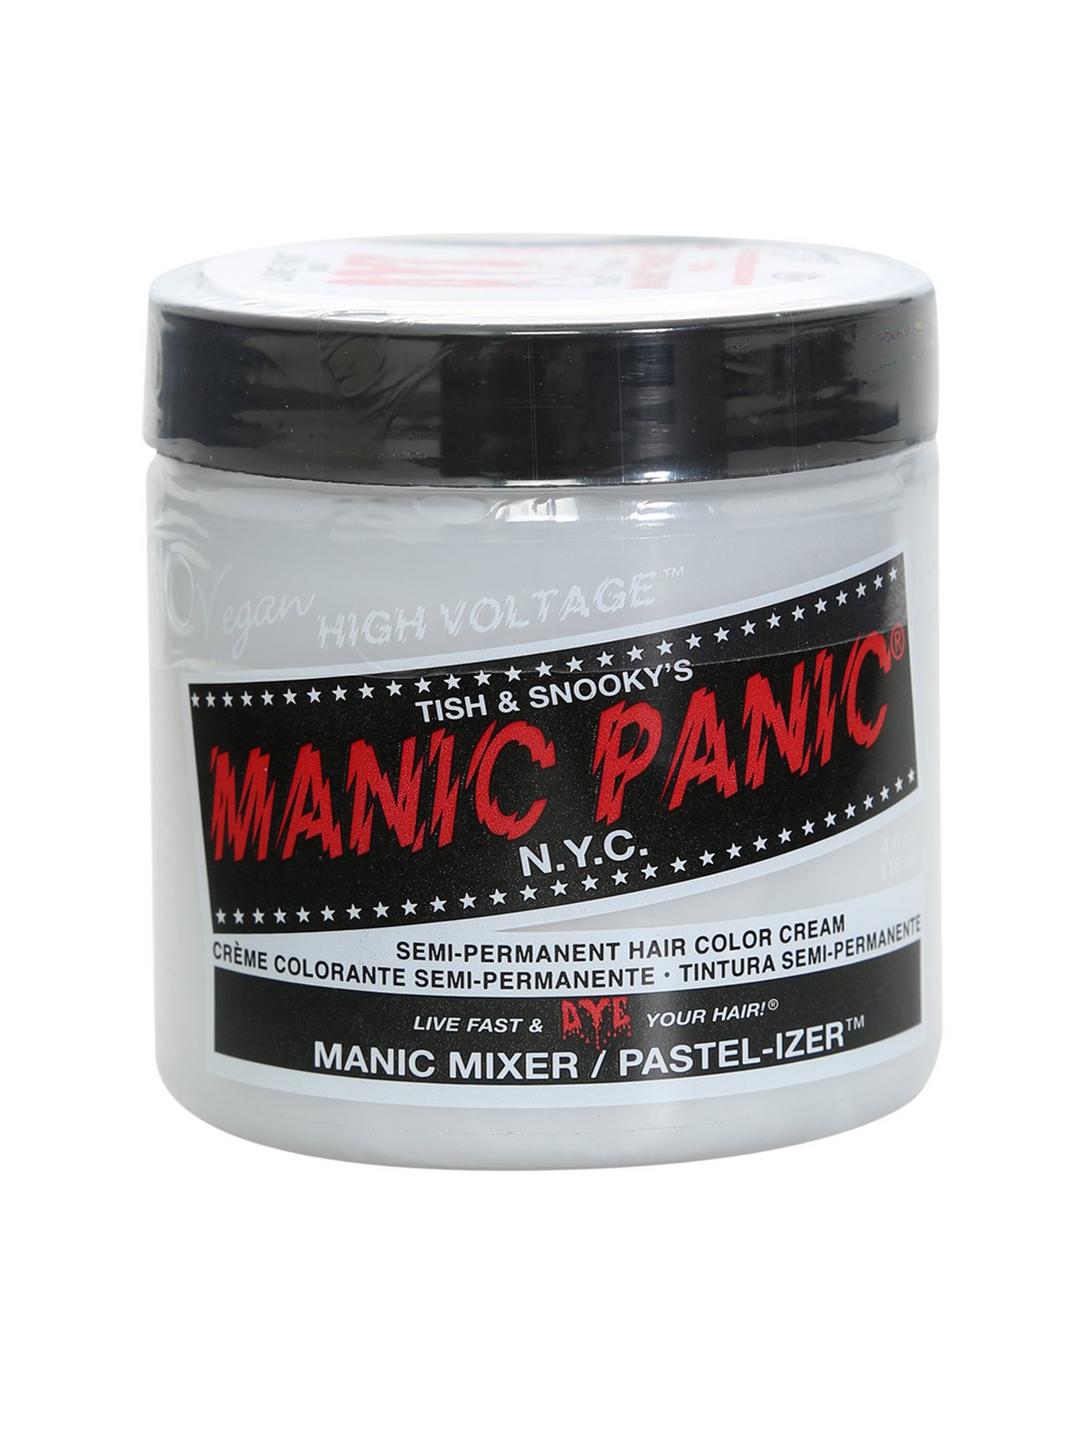 Manic Panic Classic Cream Formula Manic Mixer/Pastel-izer, , hi-res